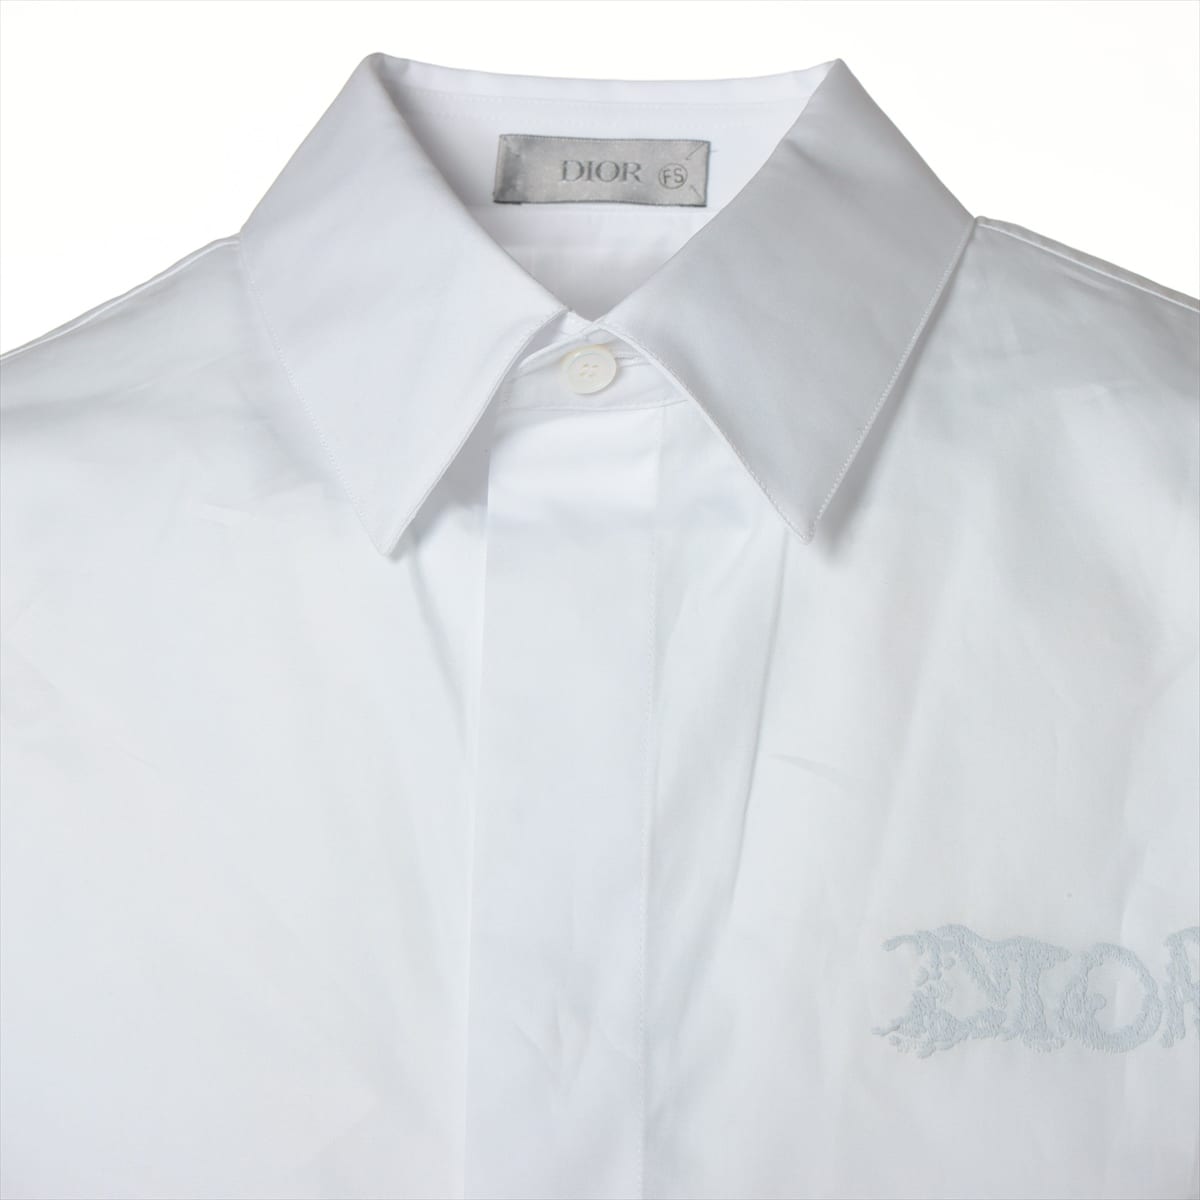 ディオール×ピータードイグ 21AW コットン×ポリエステル シャツ 39 メンズ ホワイト  ロゴ刺繍 ファミリーセール品